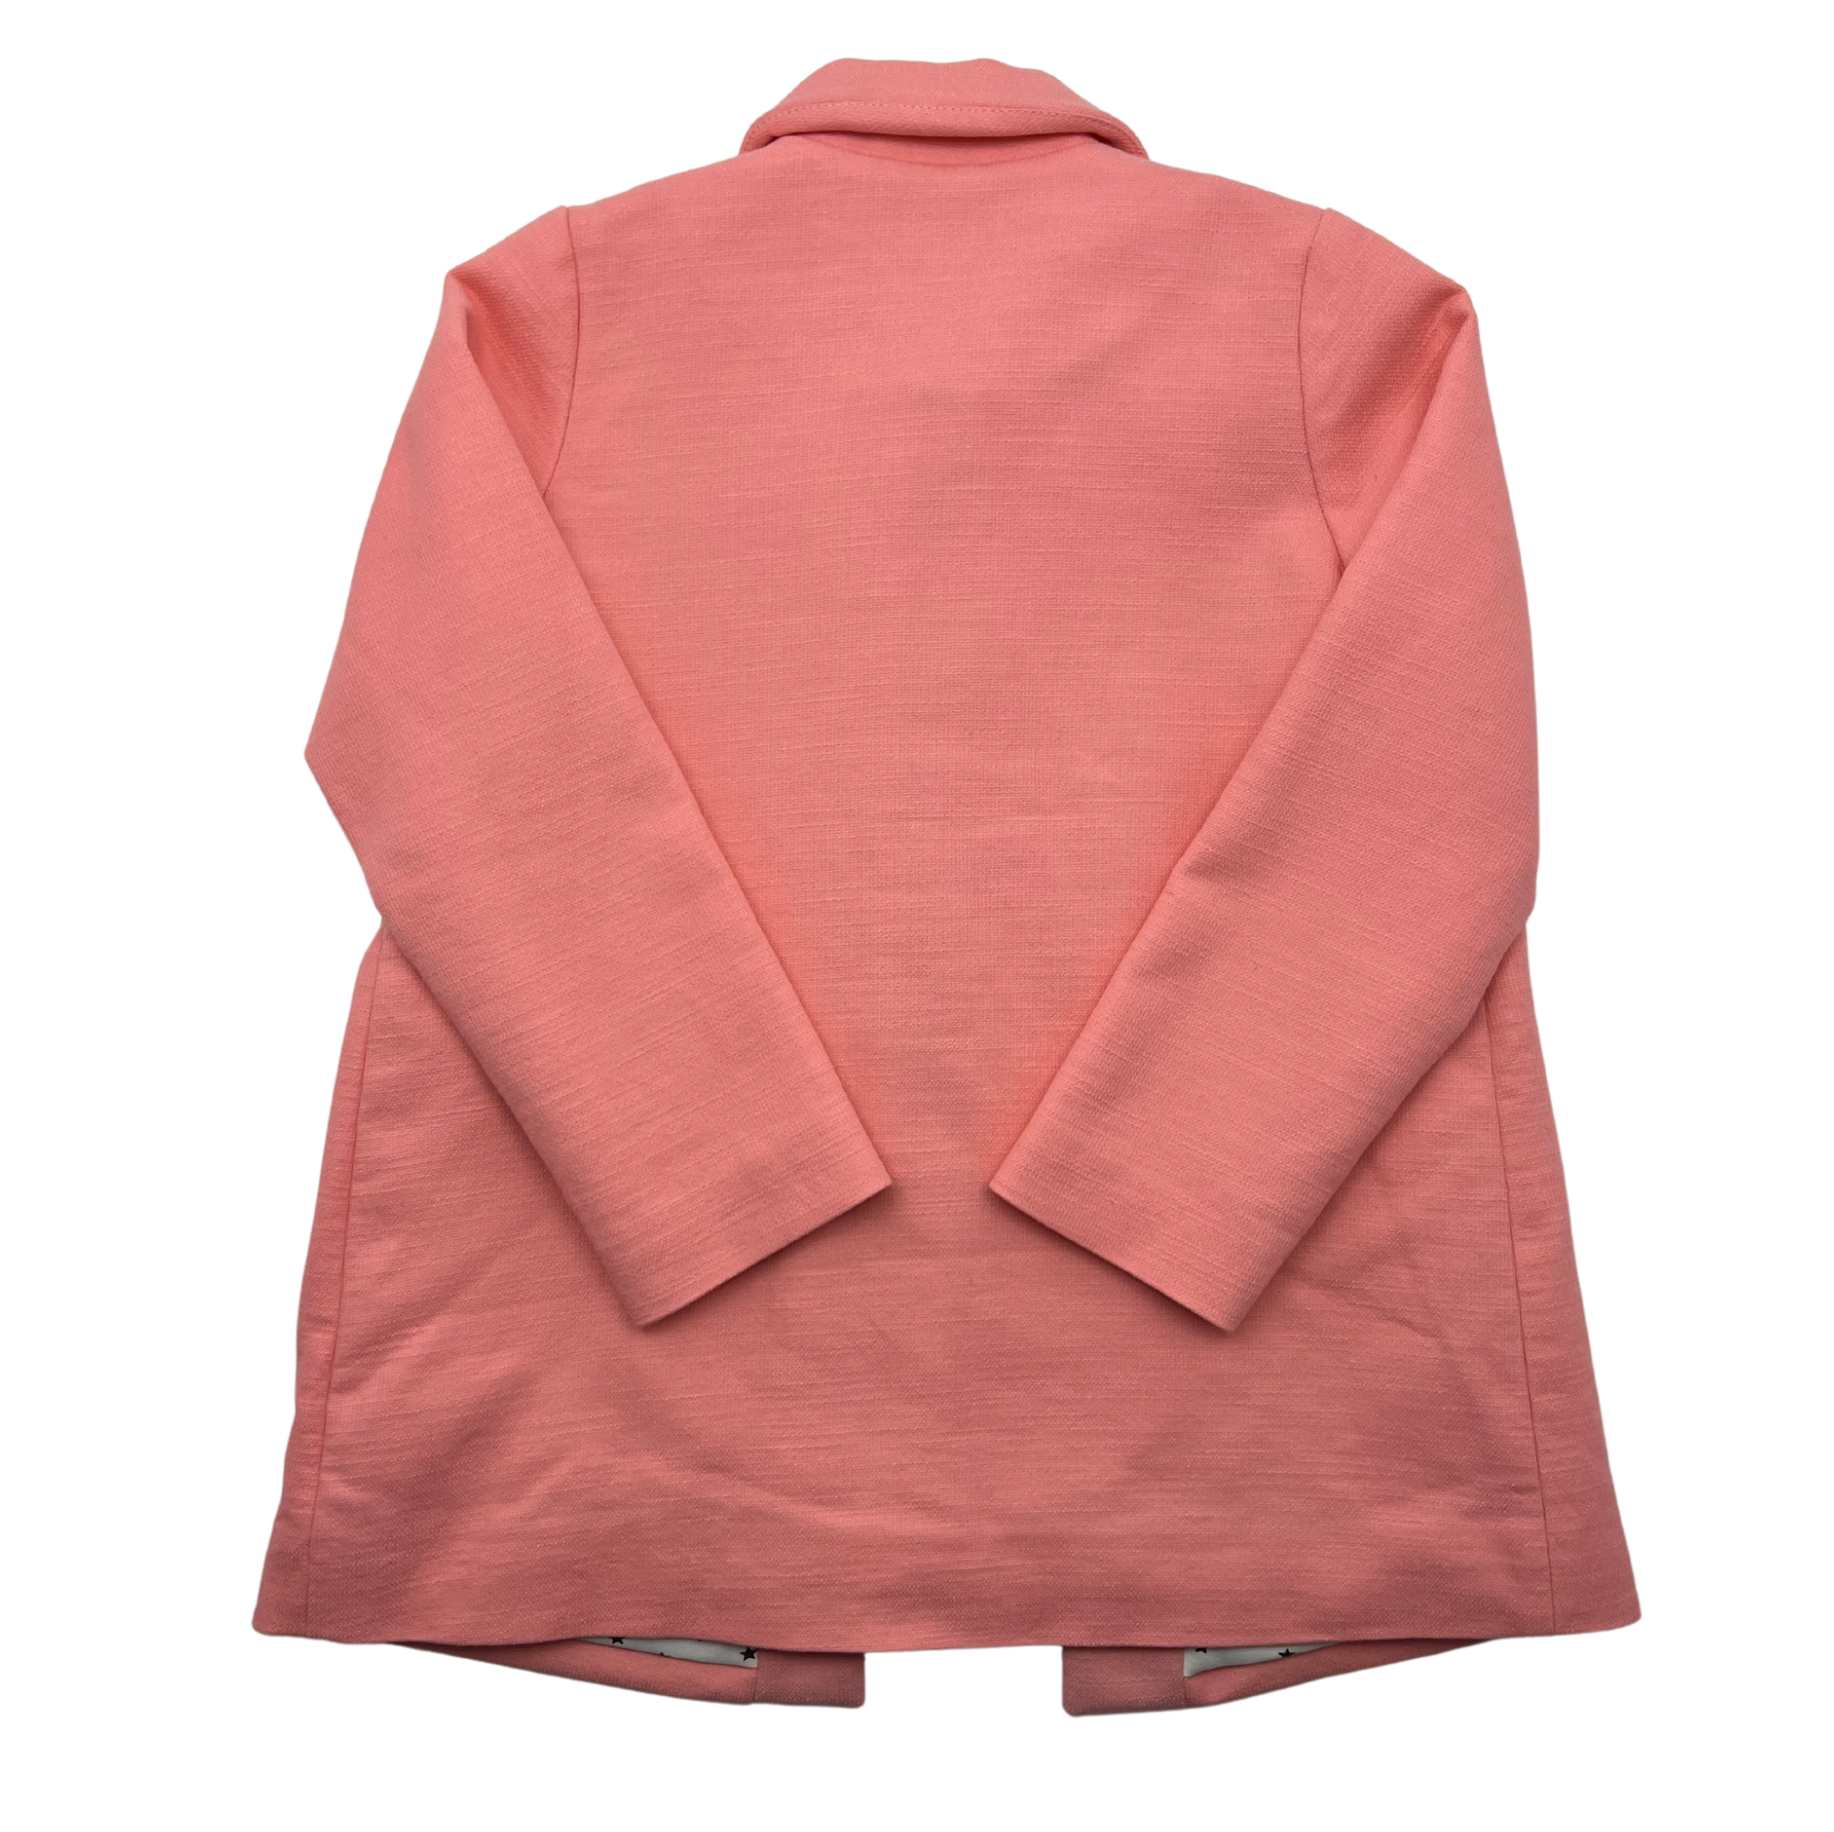 BONTON - Manteau rose avec fraise - 10 ans